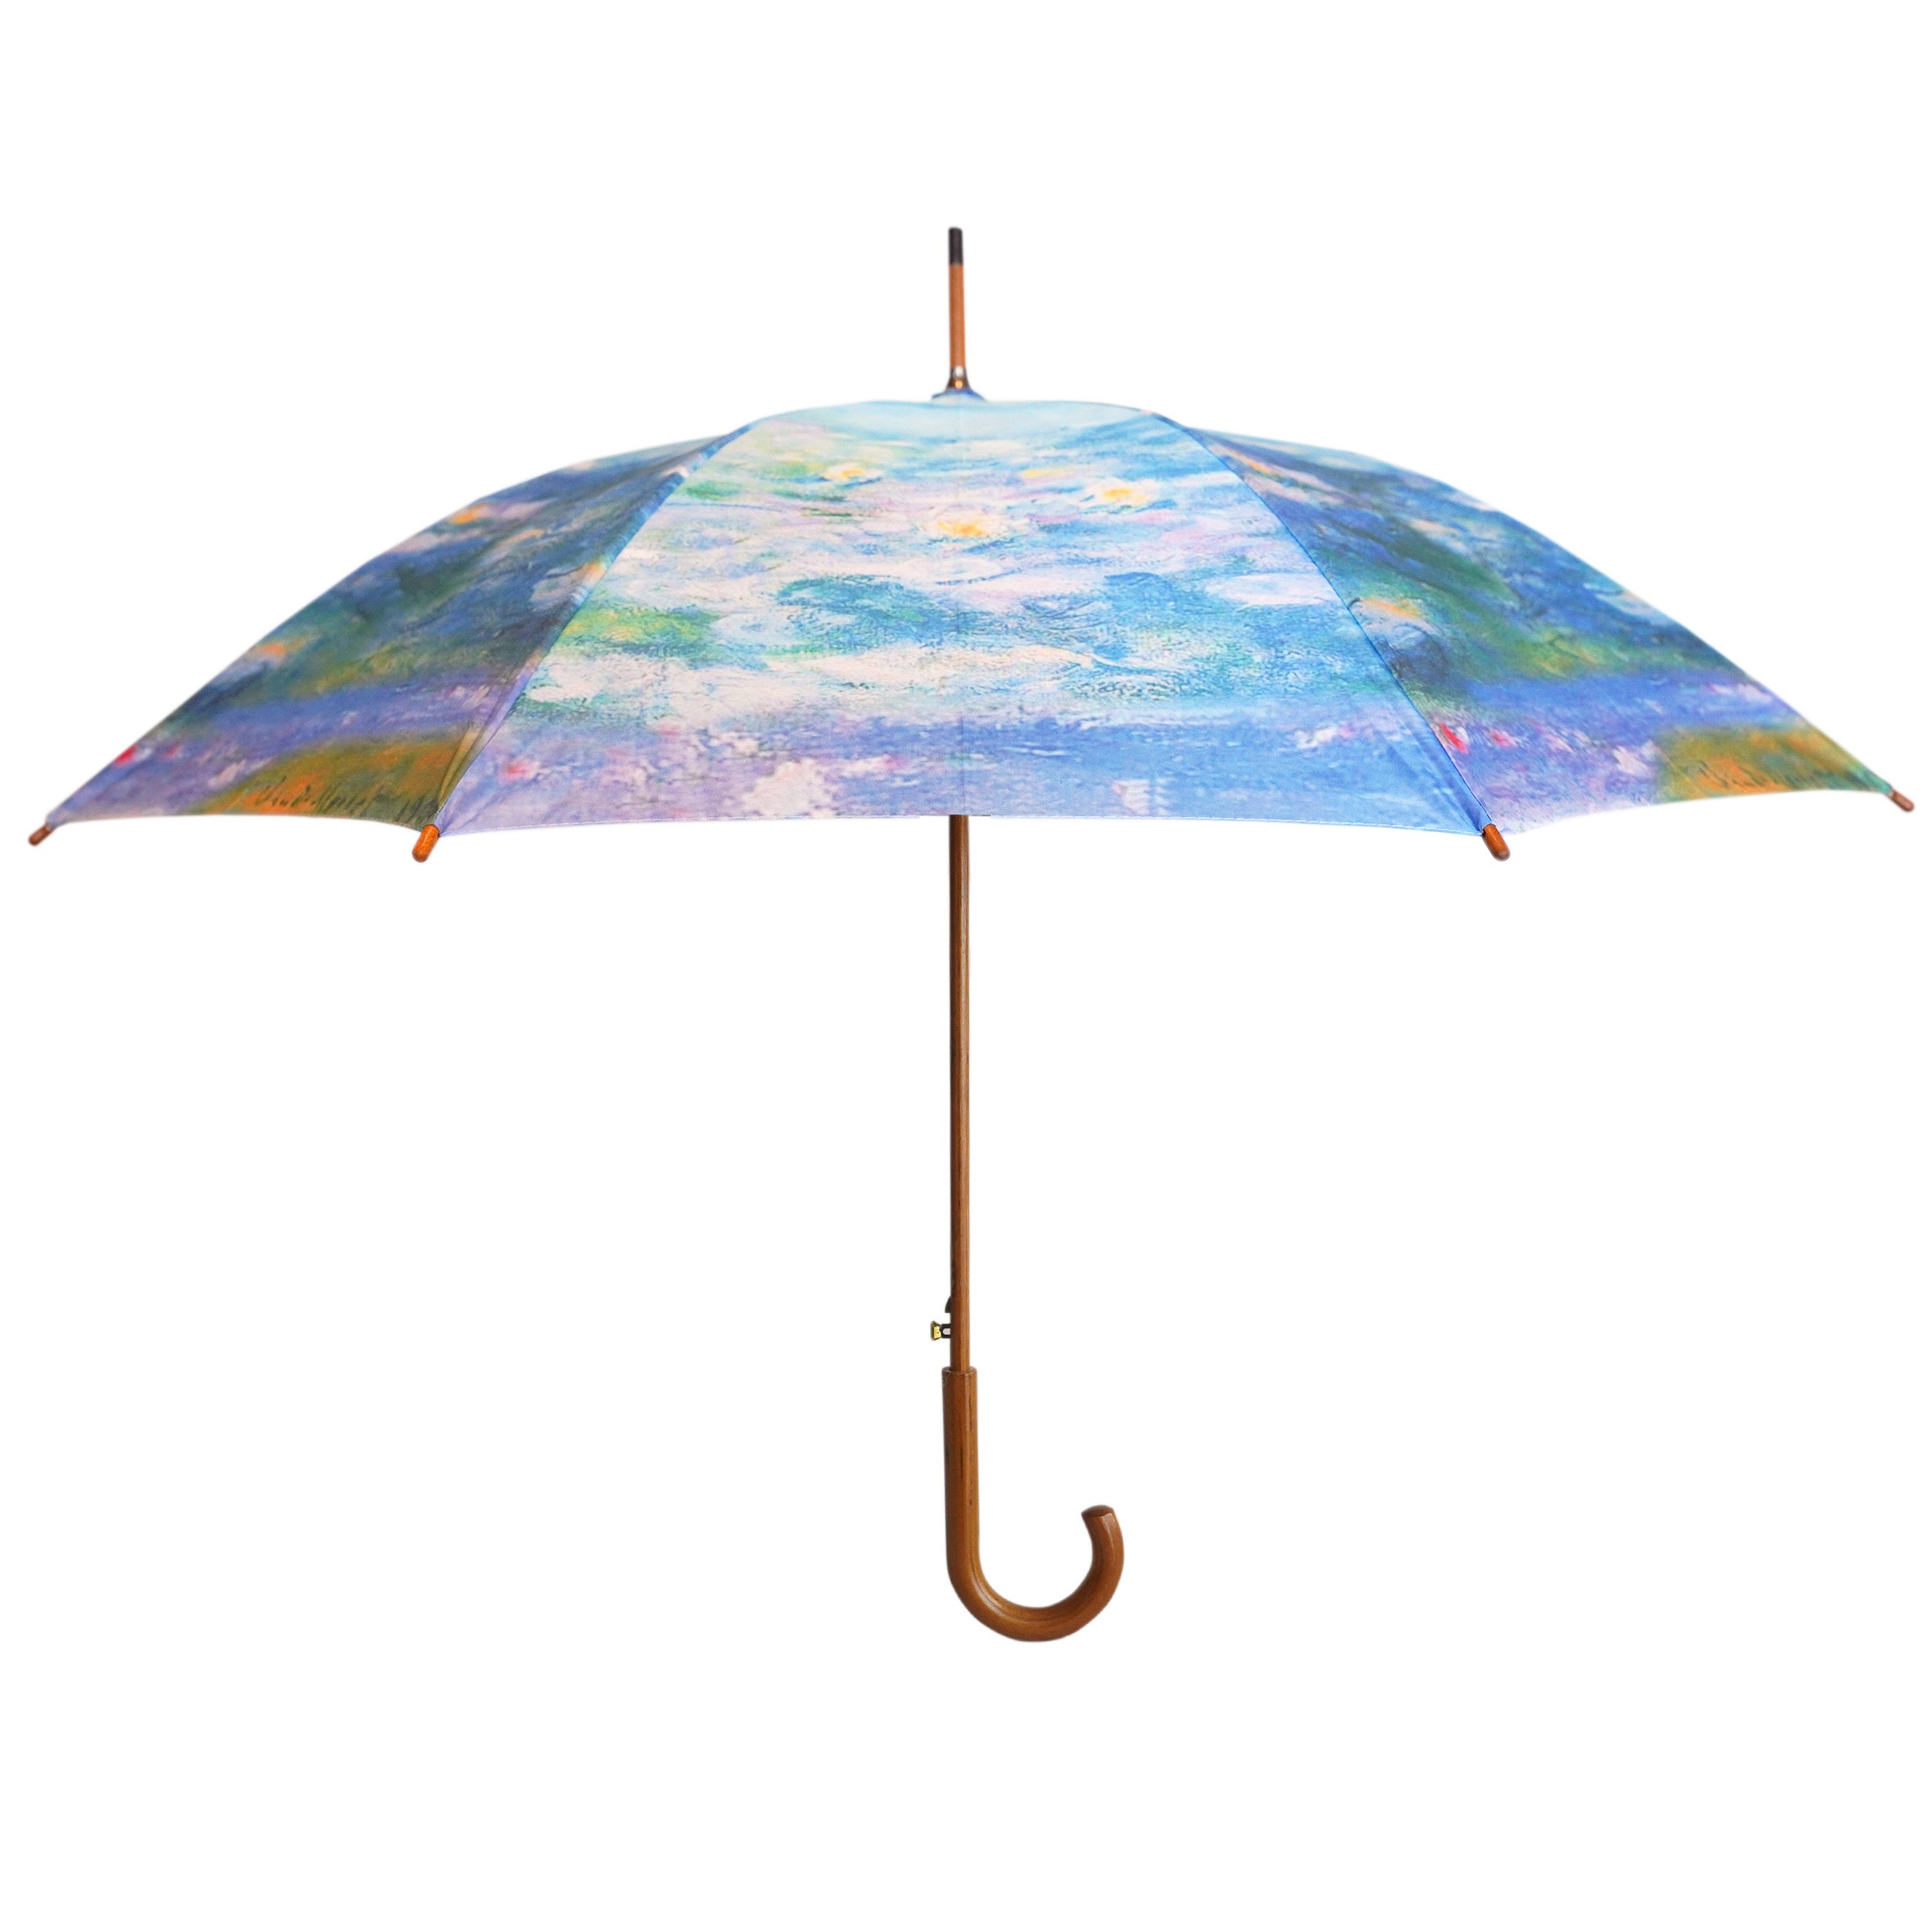 Umbrella Wood Handle 